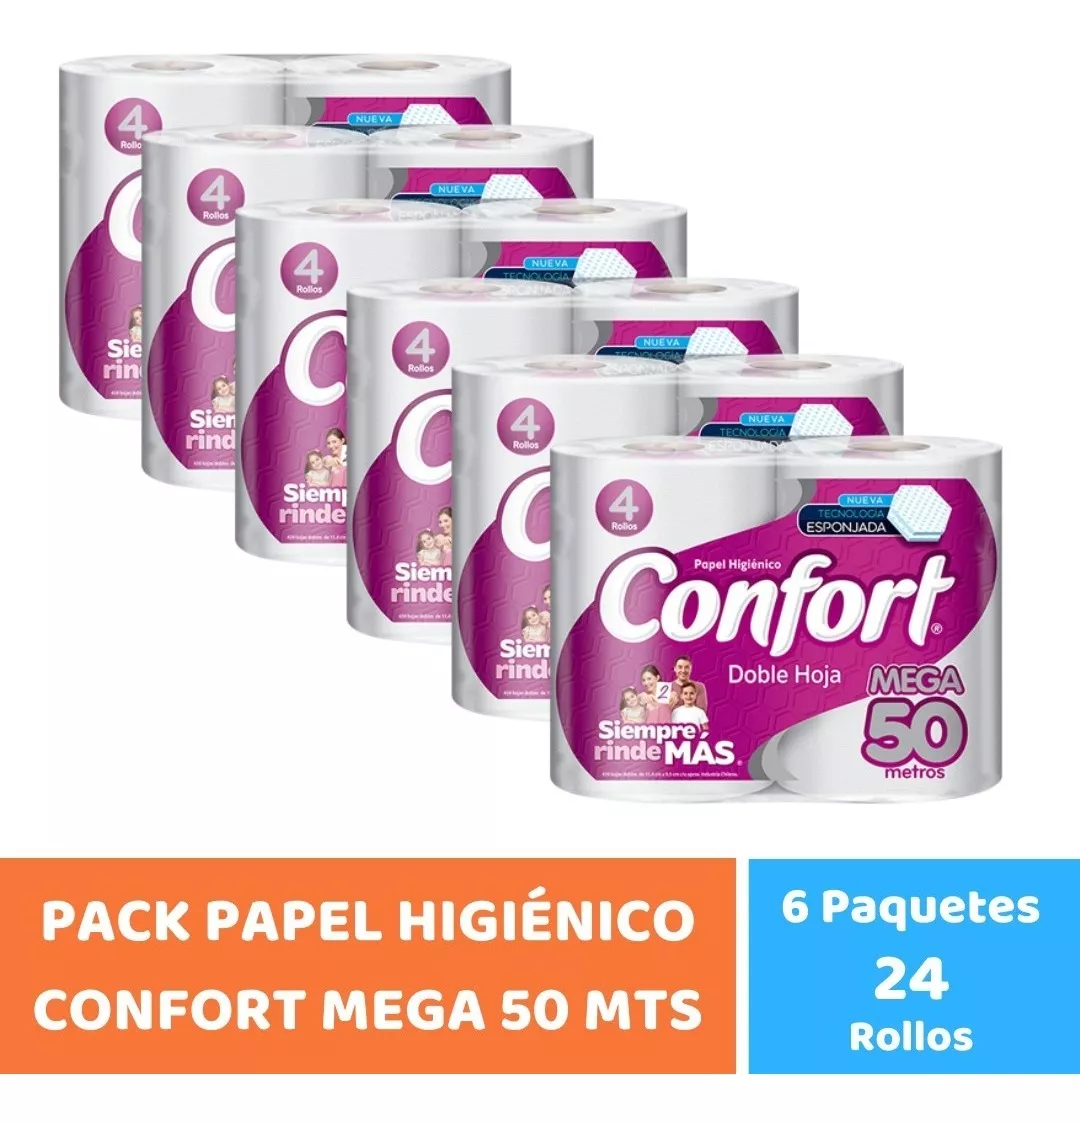 Pack Papel Higiénico Confort Mega 50 Mts X 24 Rollos